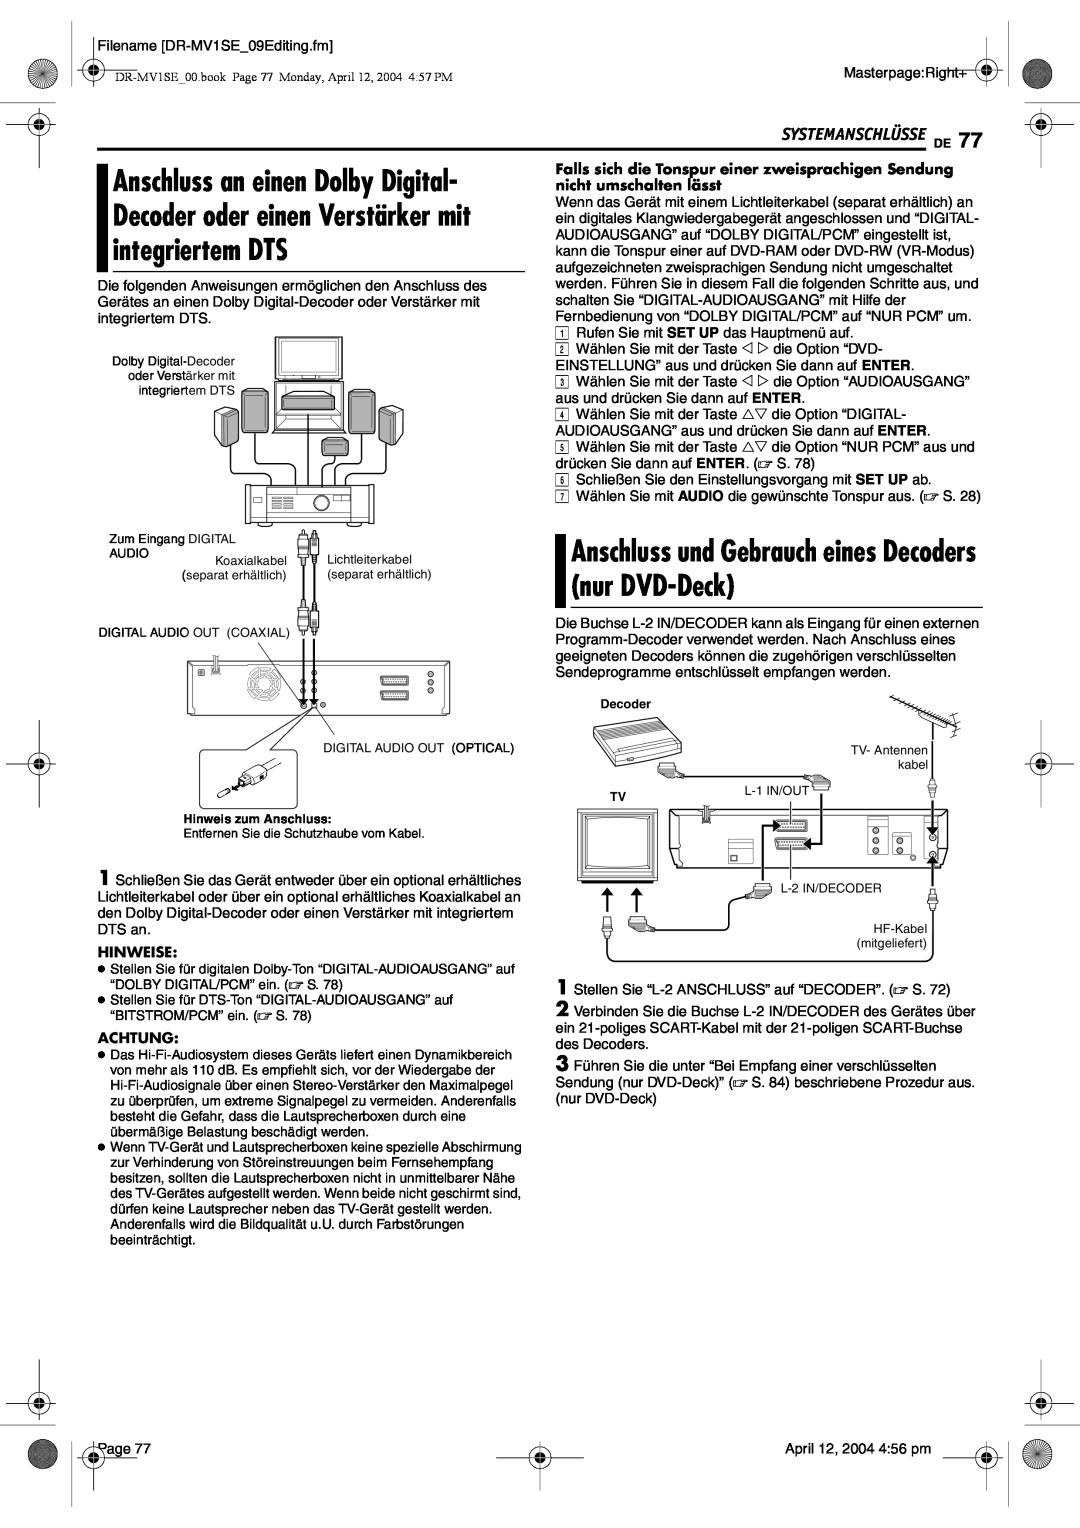 JVC DR-MV1S manual Anschluss und Gebrauch eines Decoders nur DVD-Deck, Systemanschlüsse De, Hinweise, Achtung 